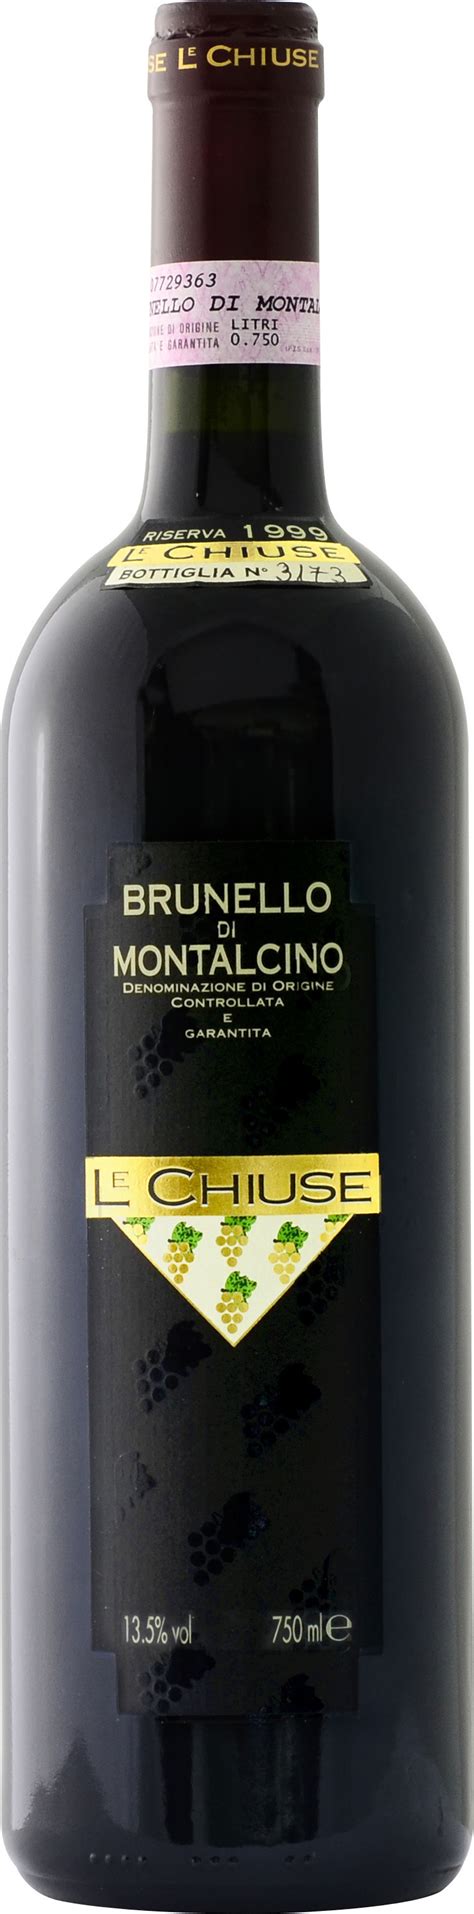 Le Chiuse Brunello Di Montalcino Riserva Docg Diecianni 2010 Expert